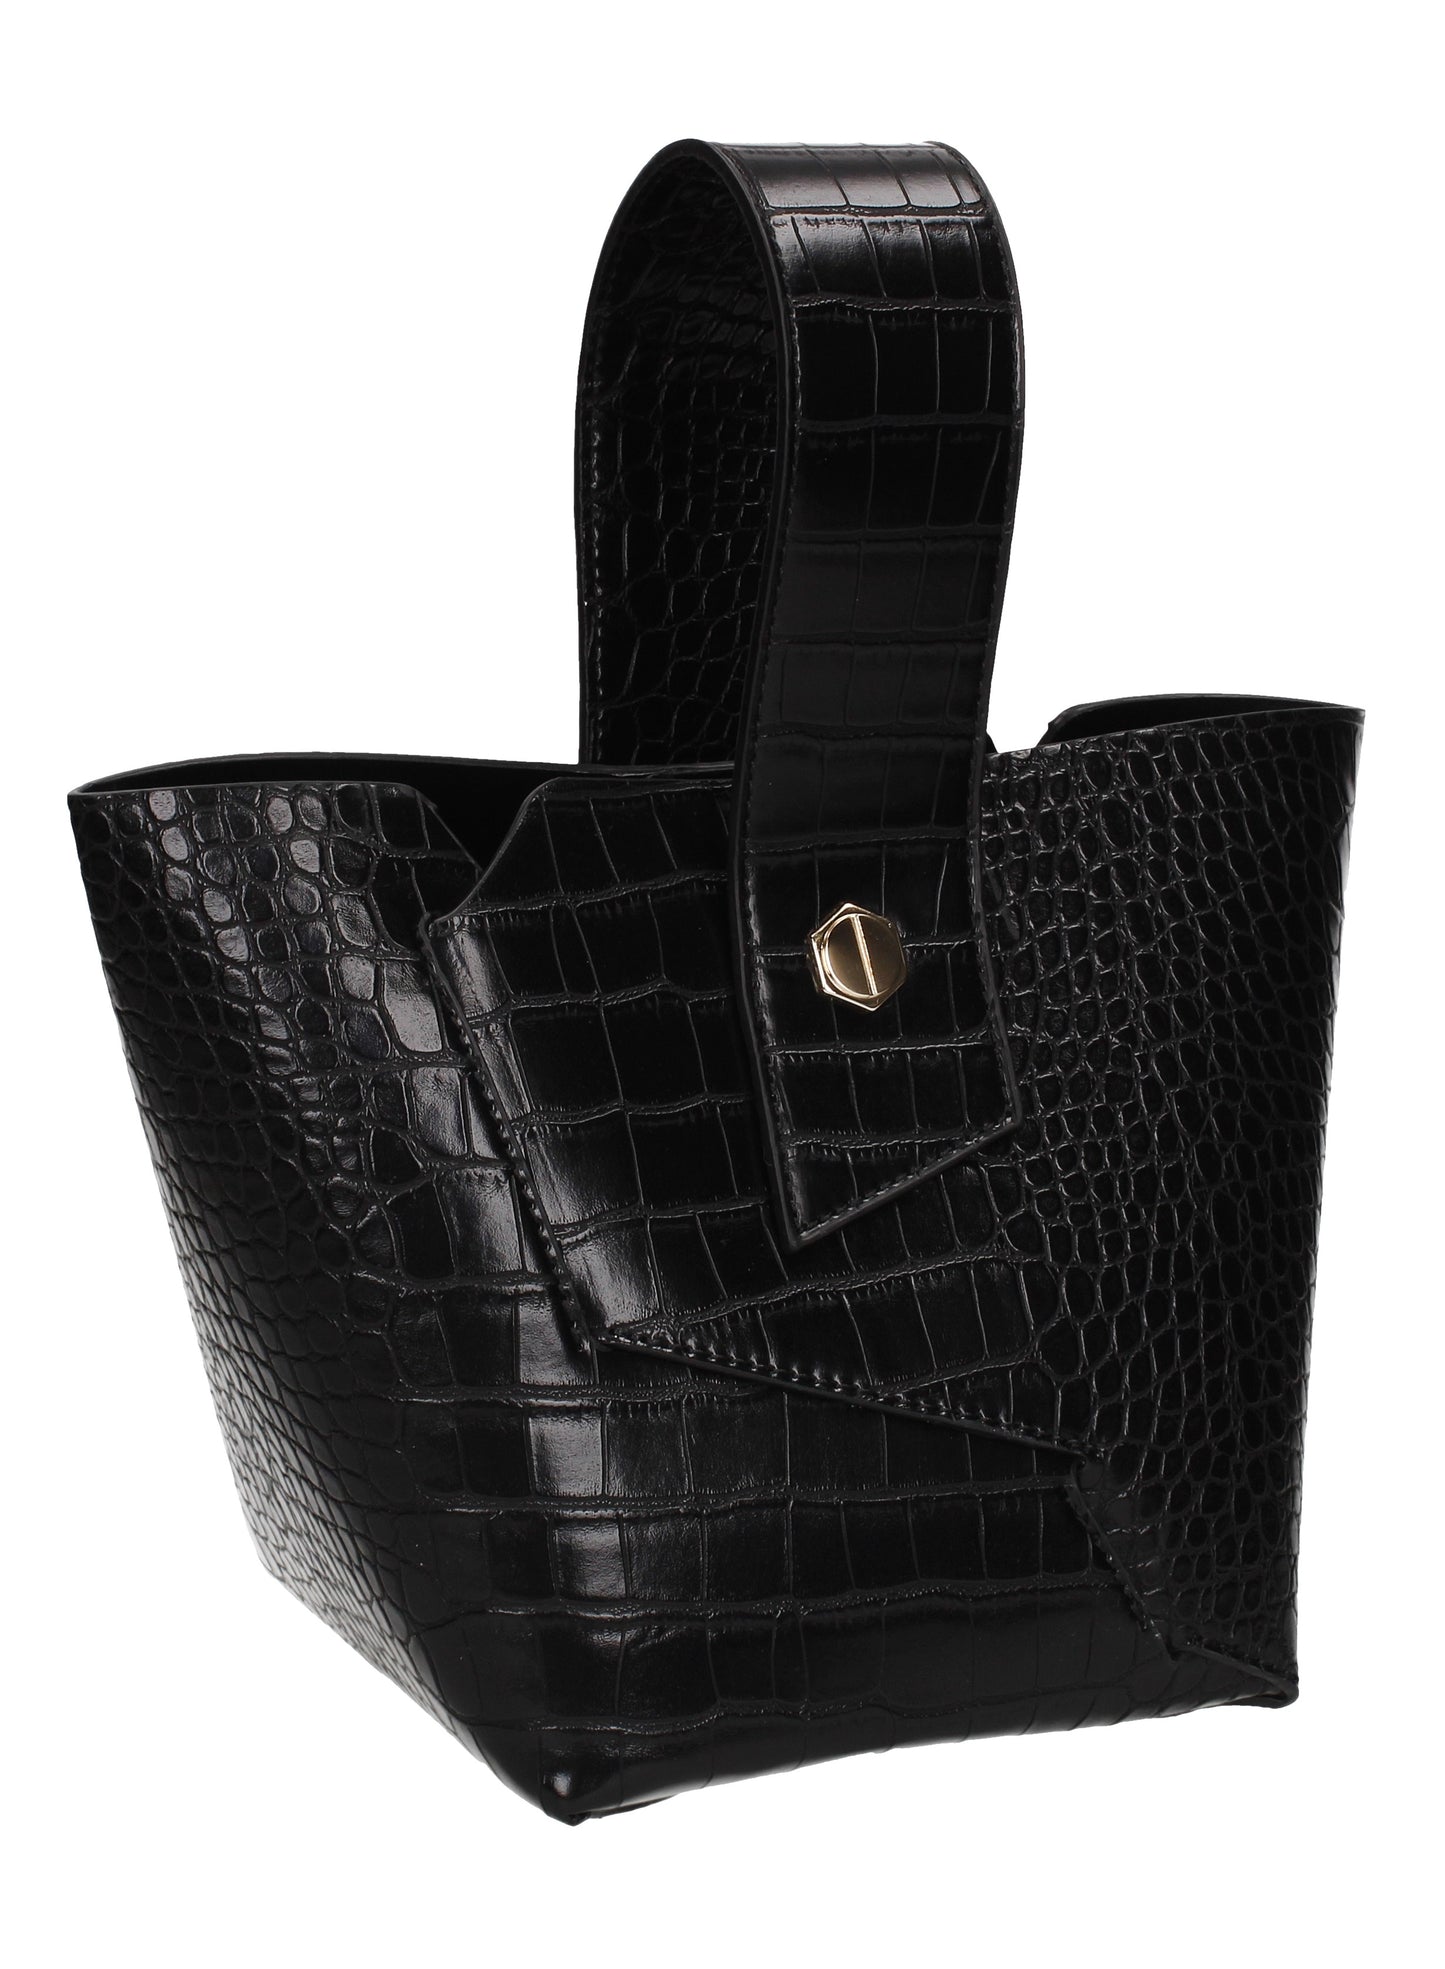 Jen Faux Leather Croc Bucket Structure Bag Black